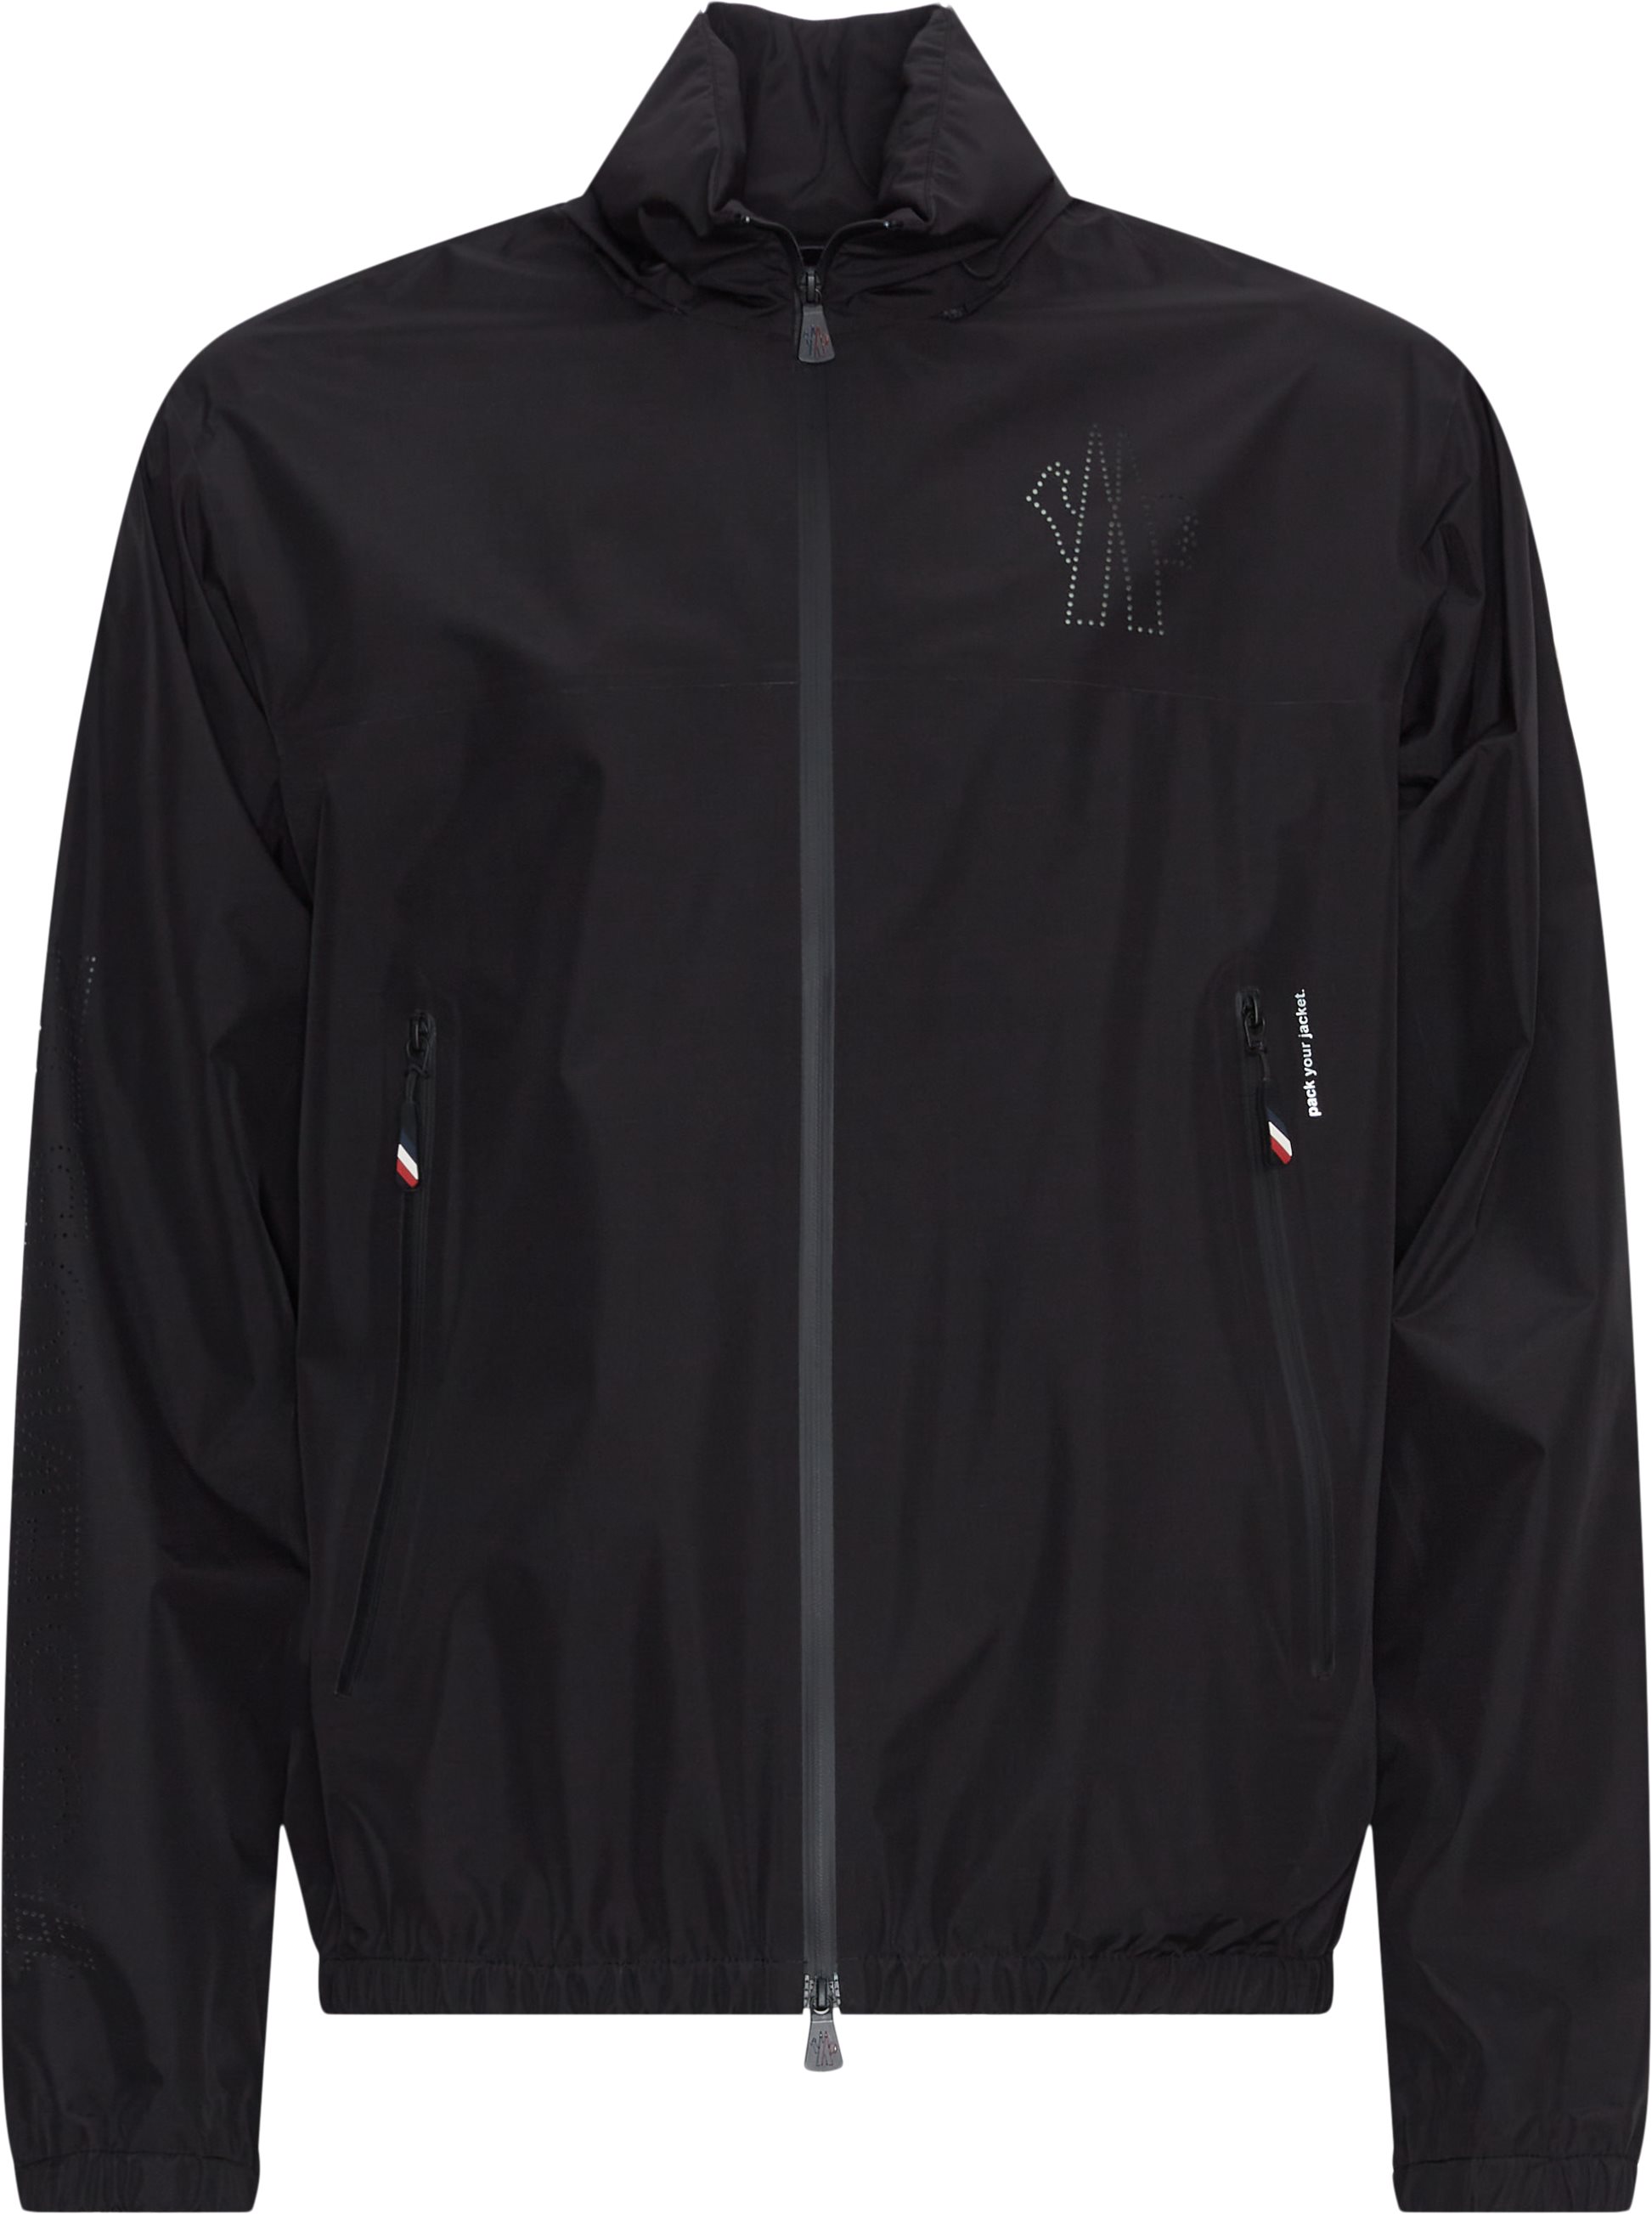 Moncler Grenoble Jackets VIELLE 1A00001 597C5 Black